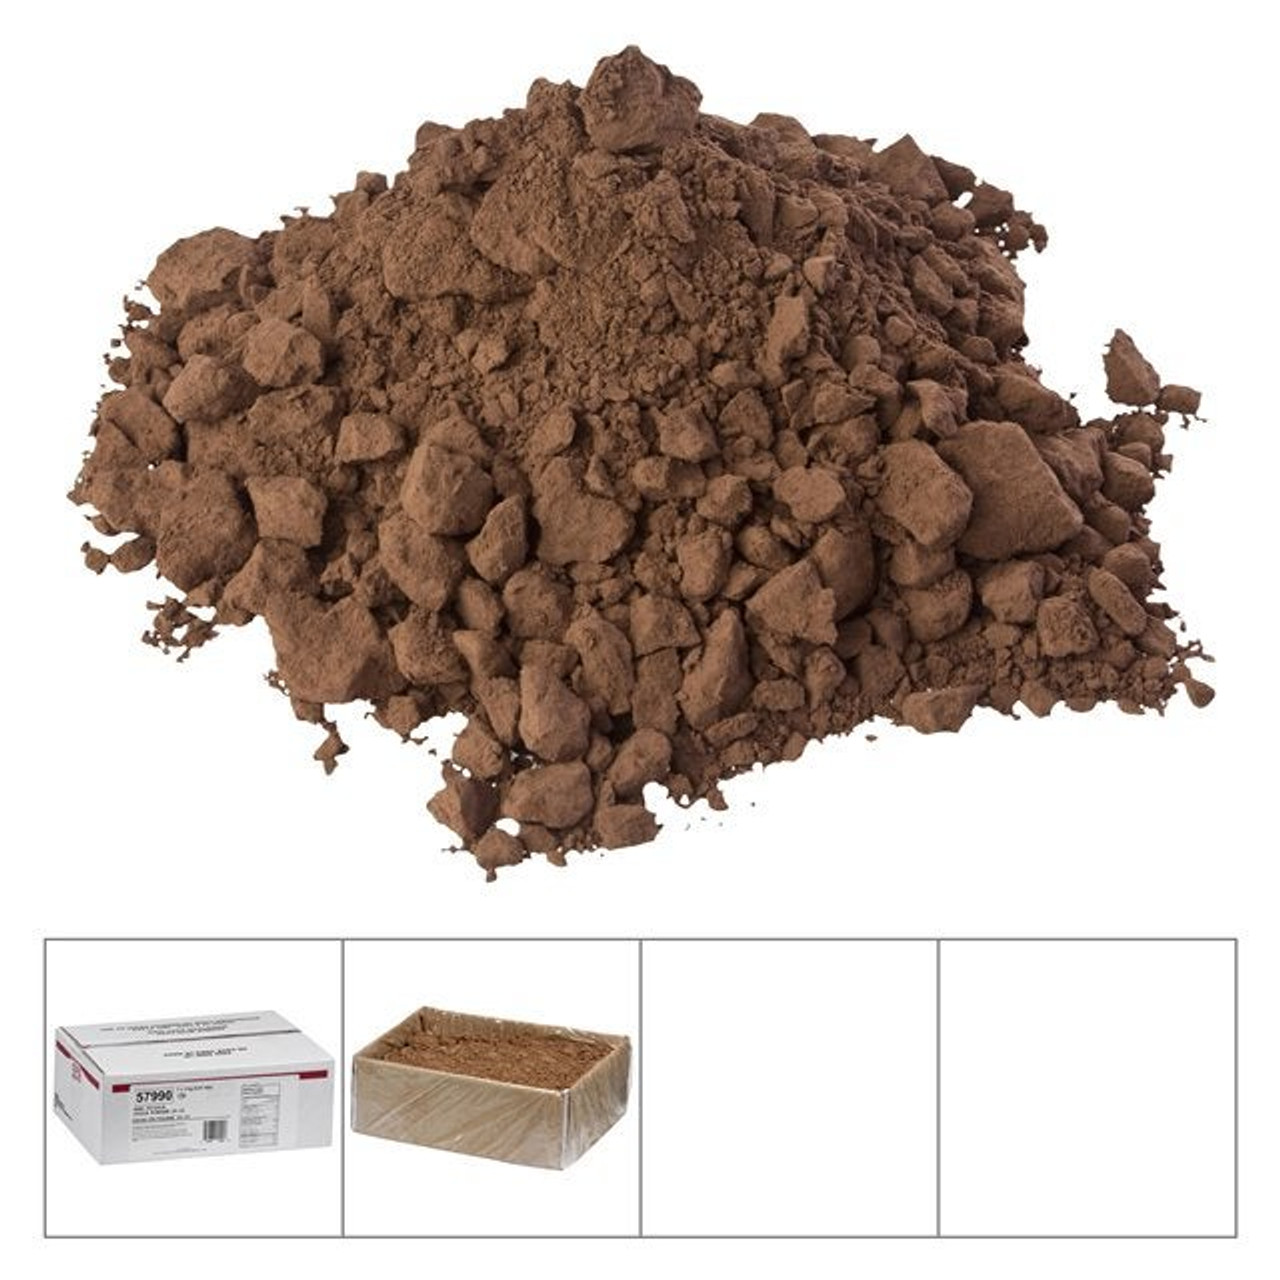 Gordon Choice Cocoa Powder, 10-12 Percent | 3KG/Unit, 1 Unit/Case